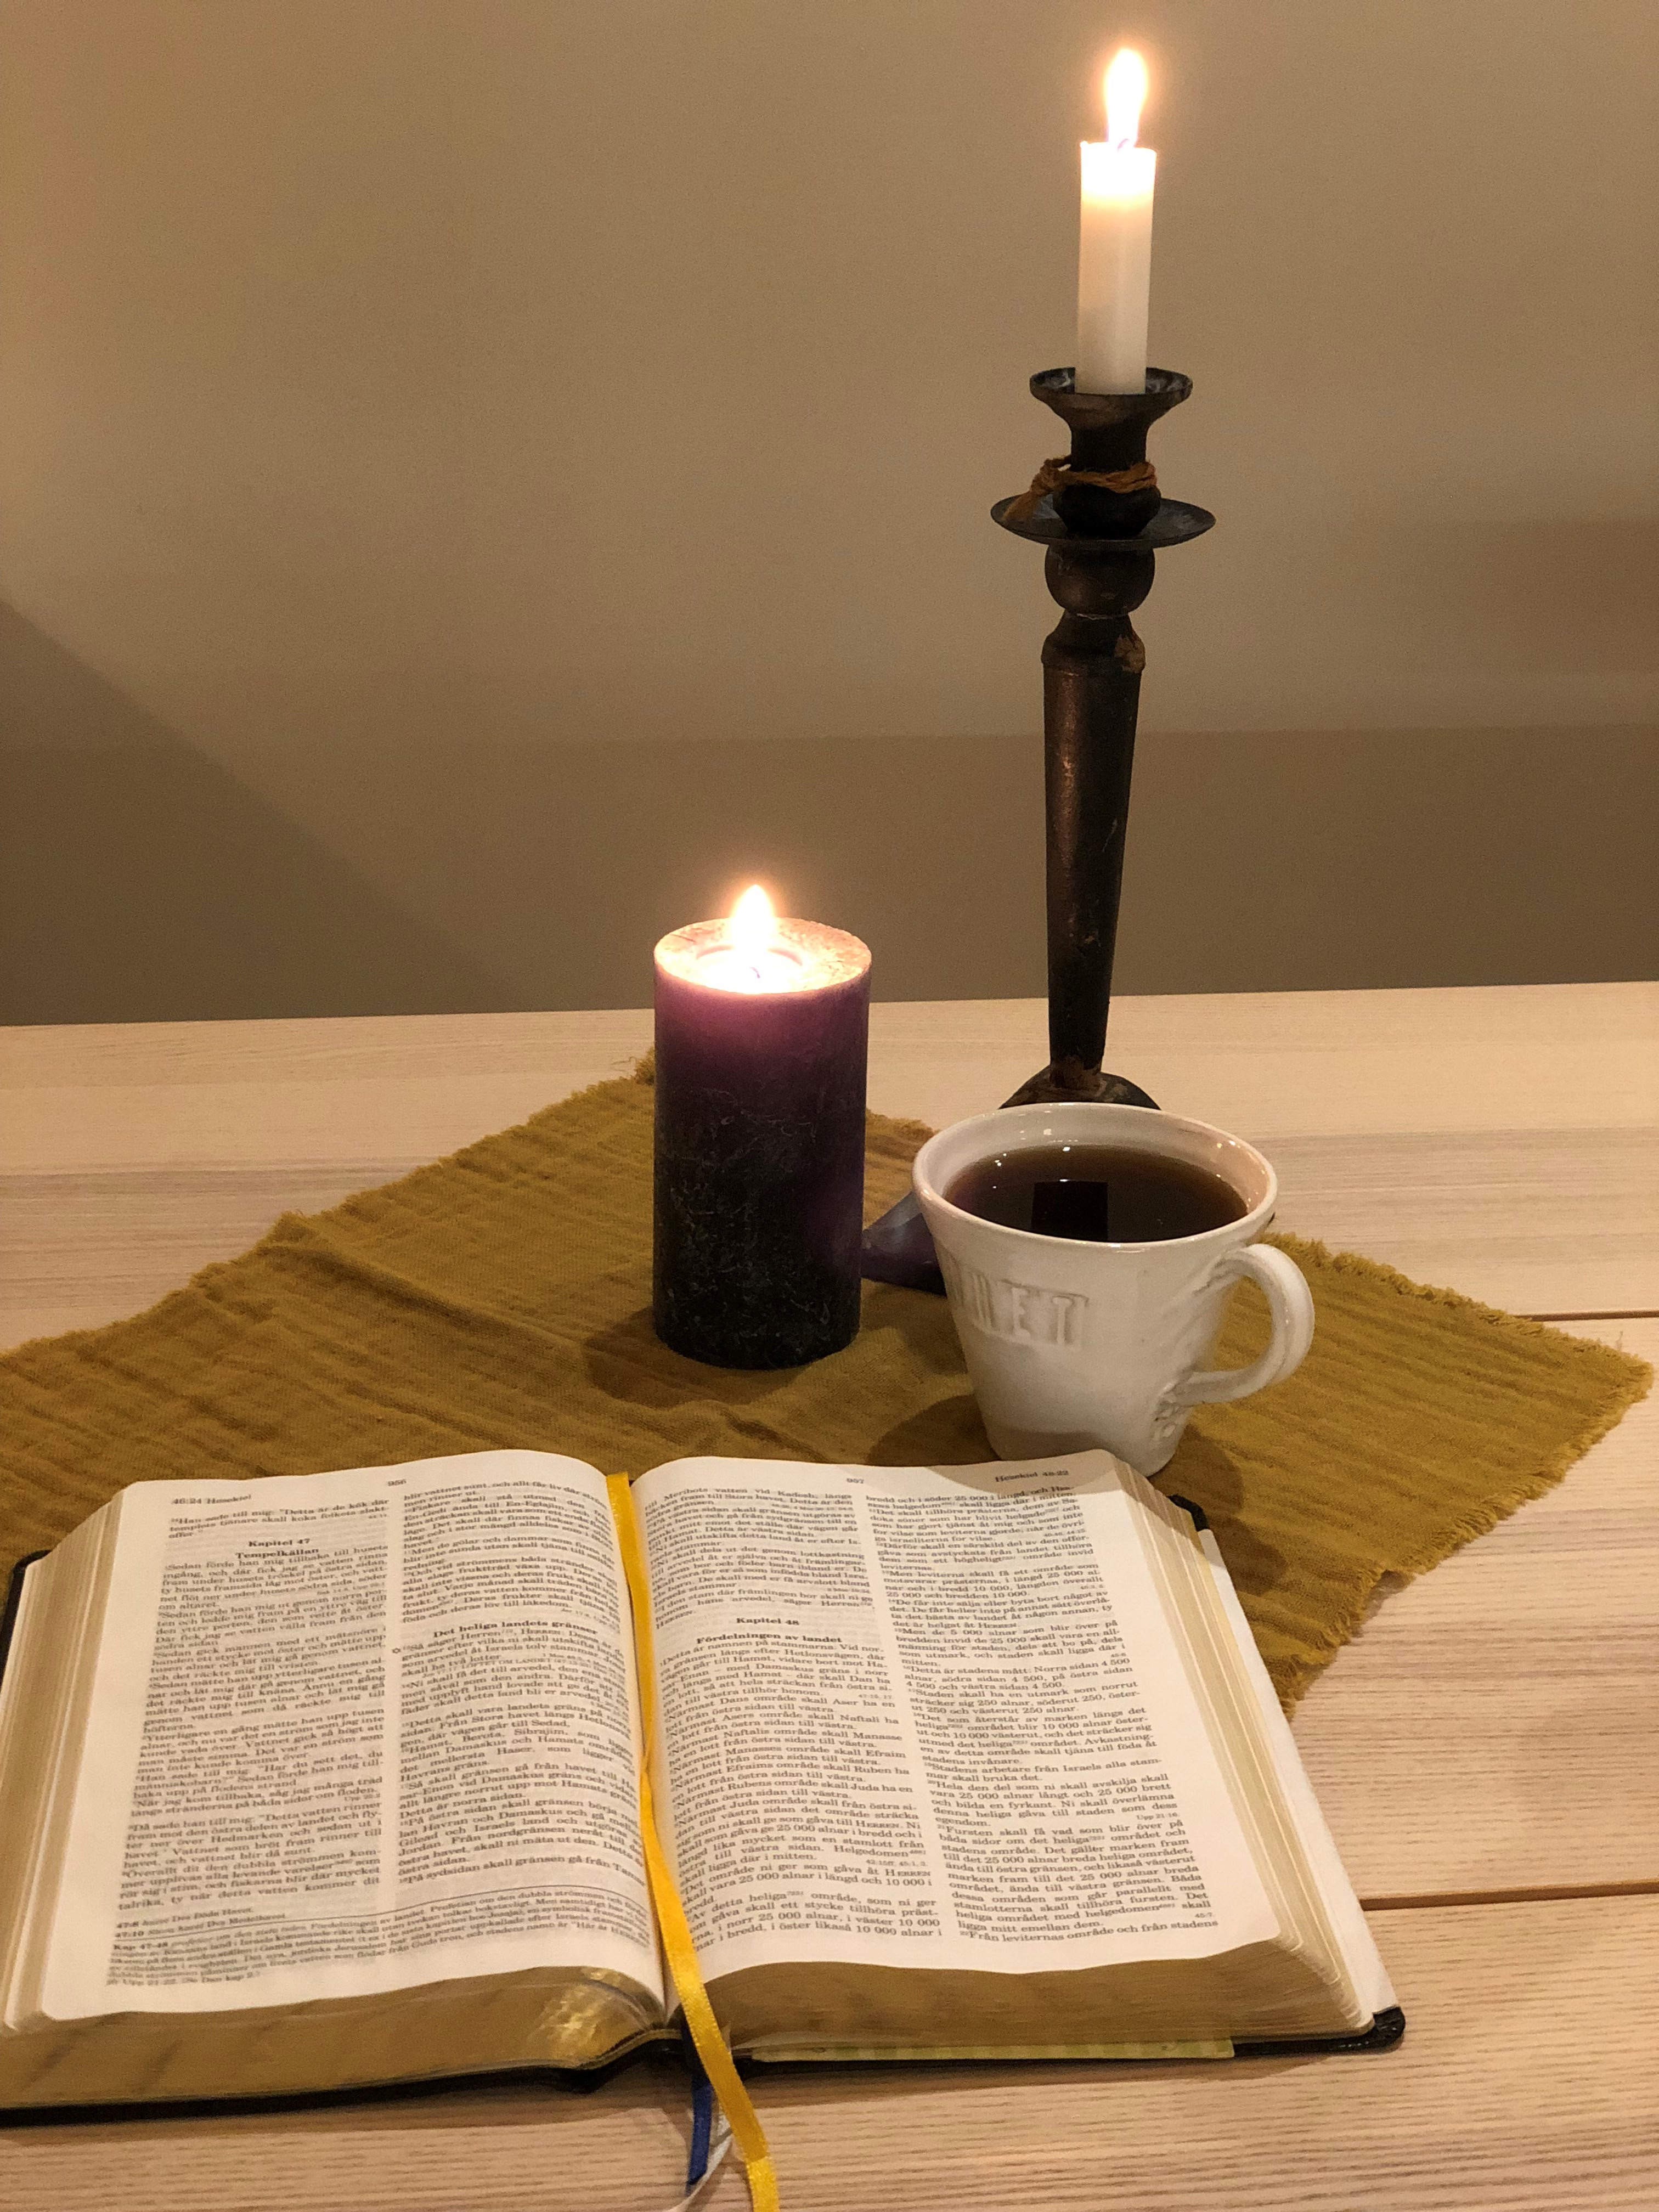 Öppen bibel på ett bord med ett ljus och en kopp kaffe bredvid.